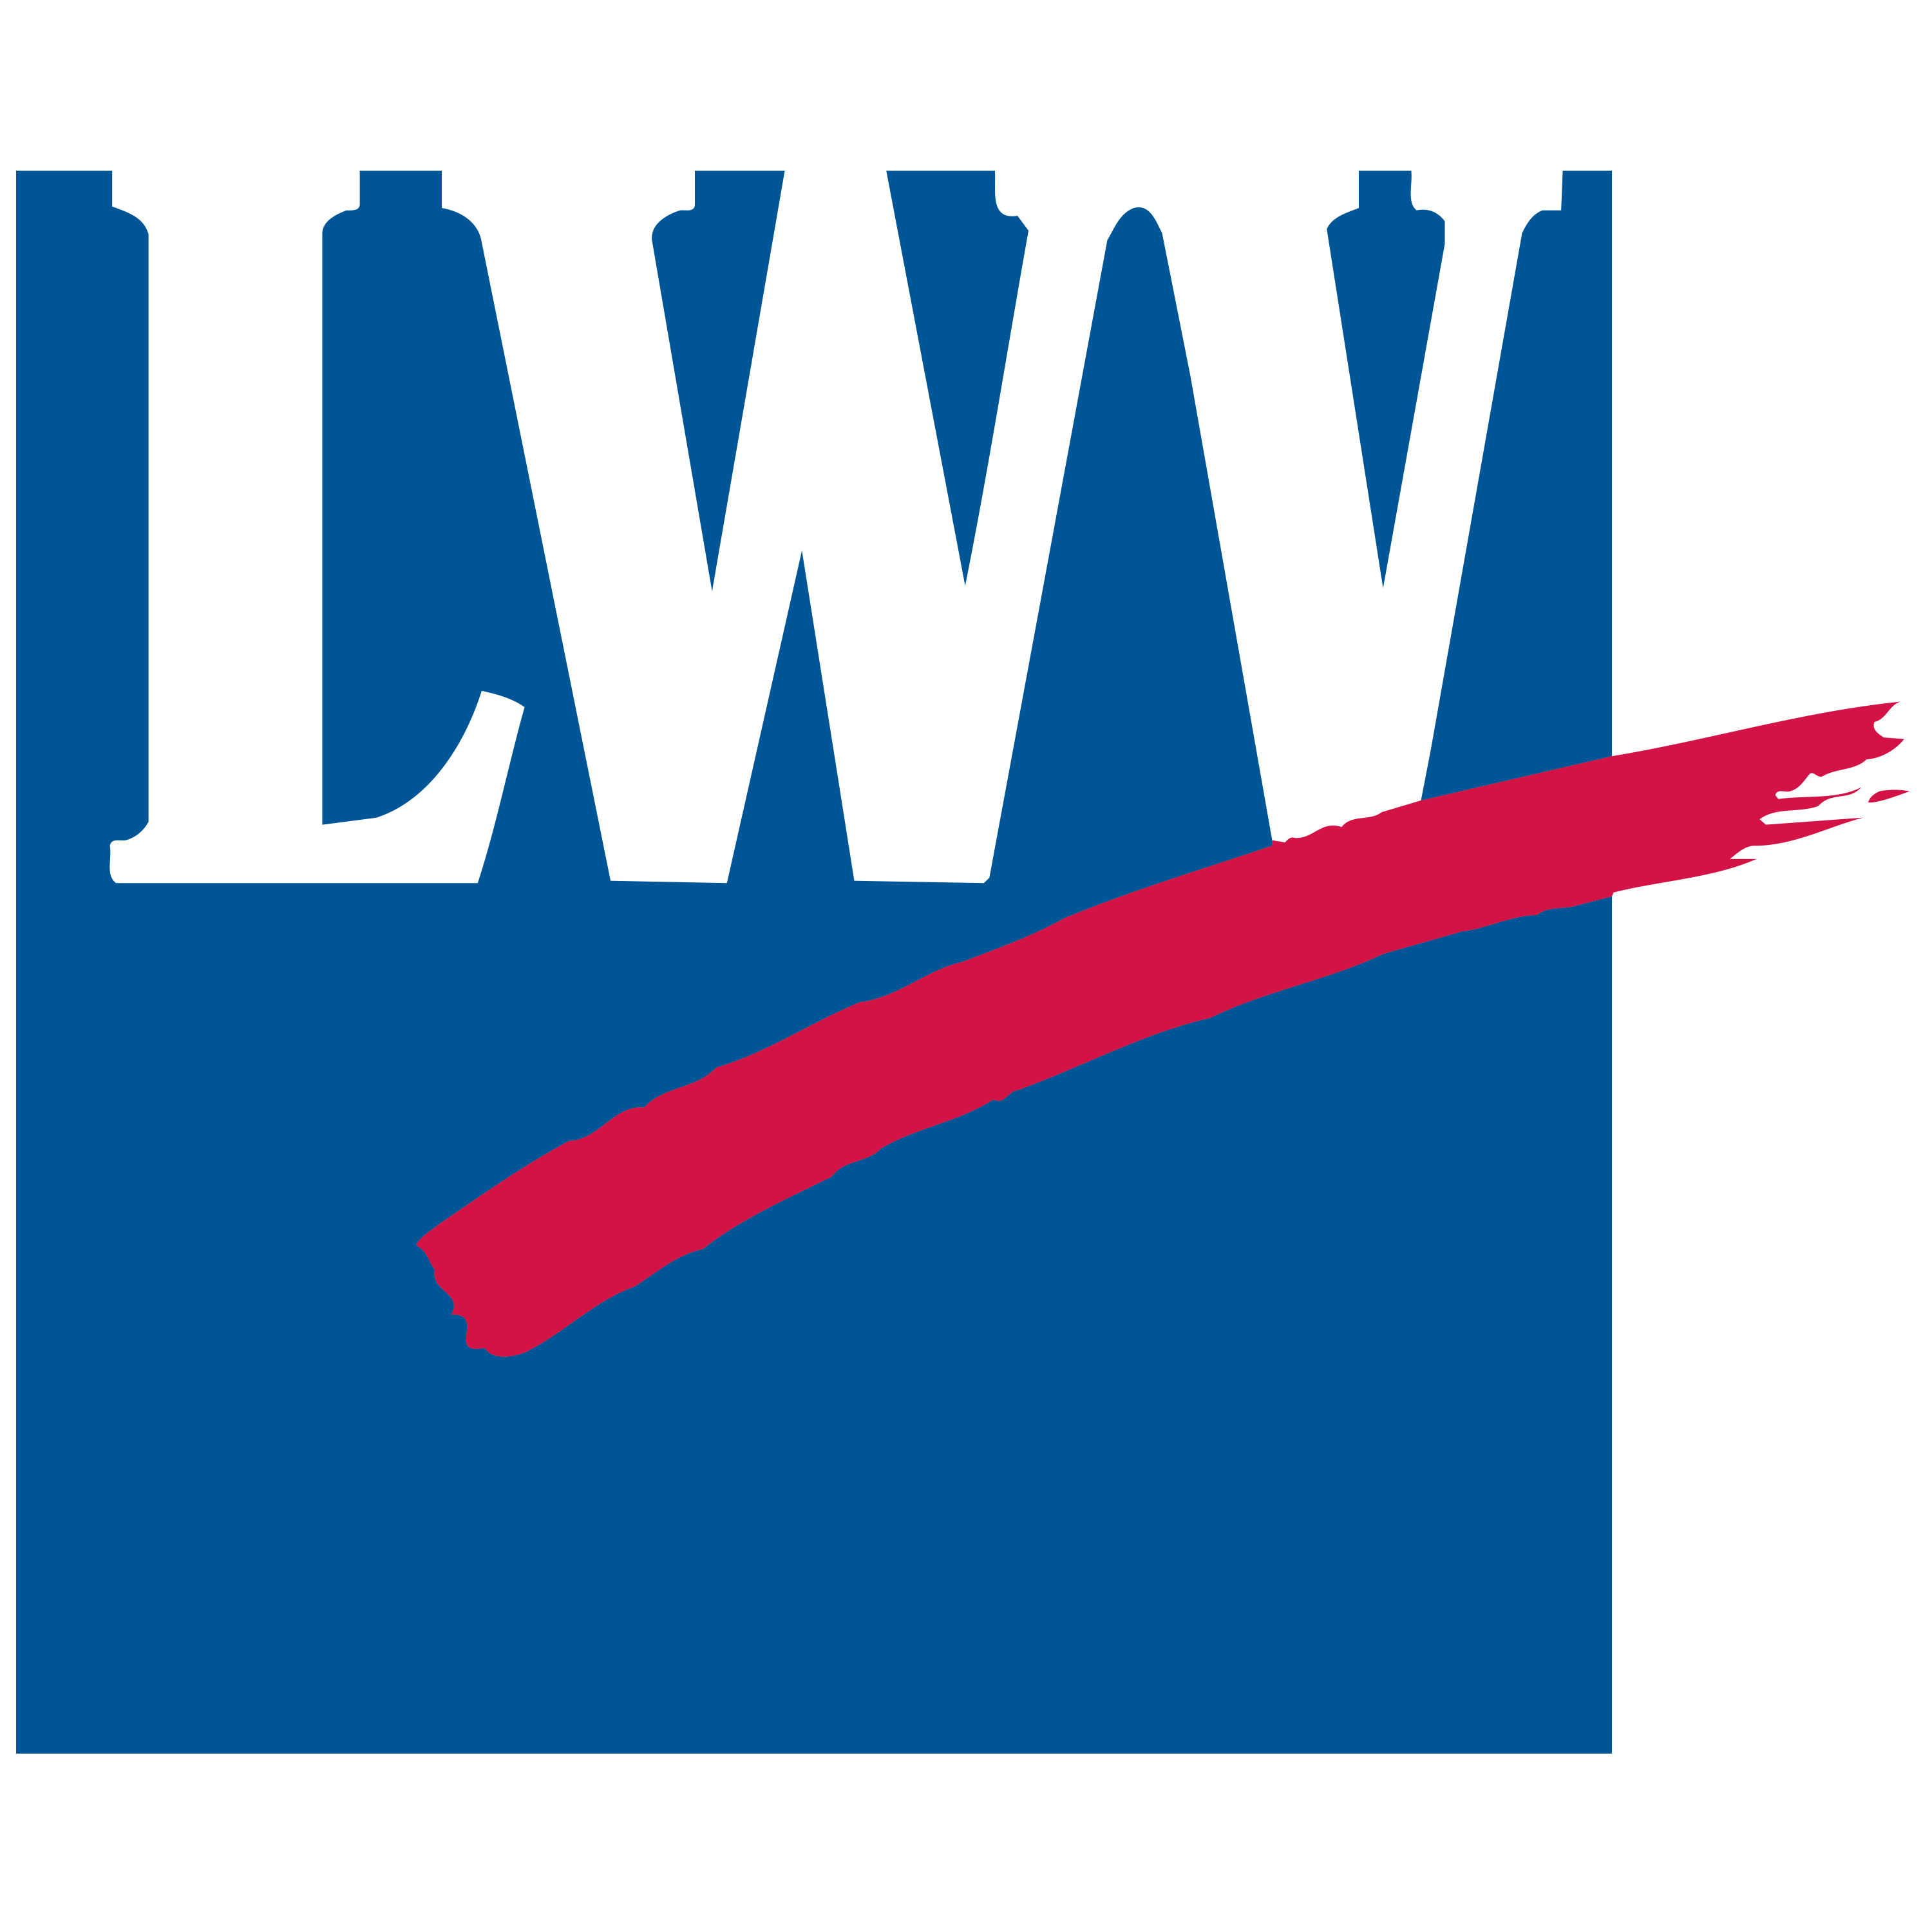 LWV logo